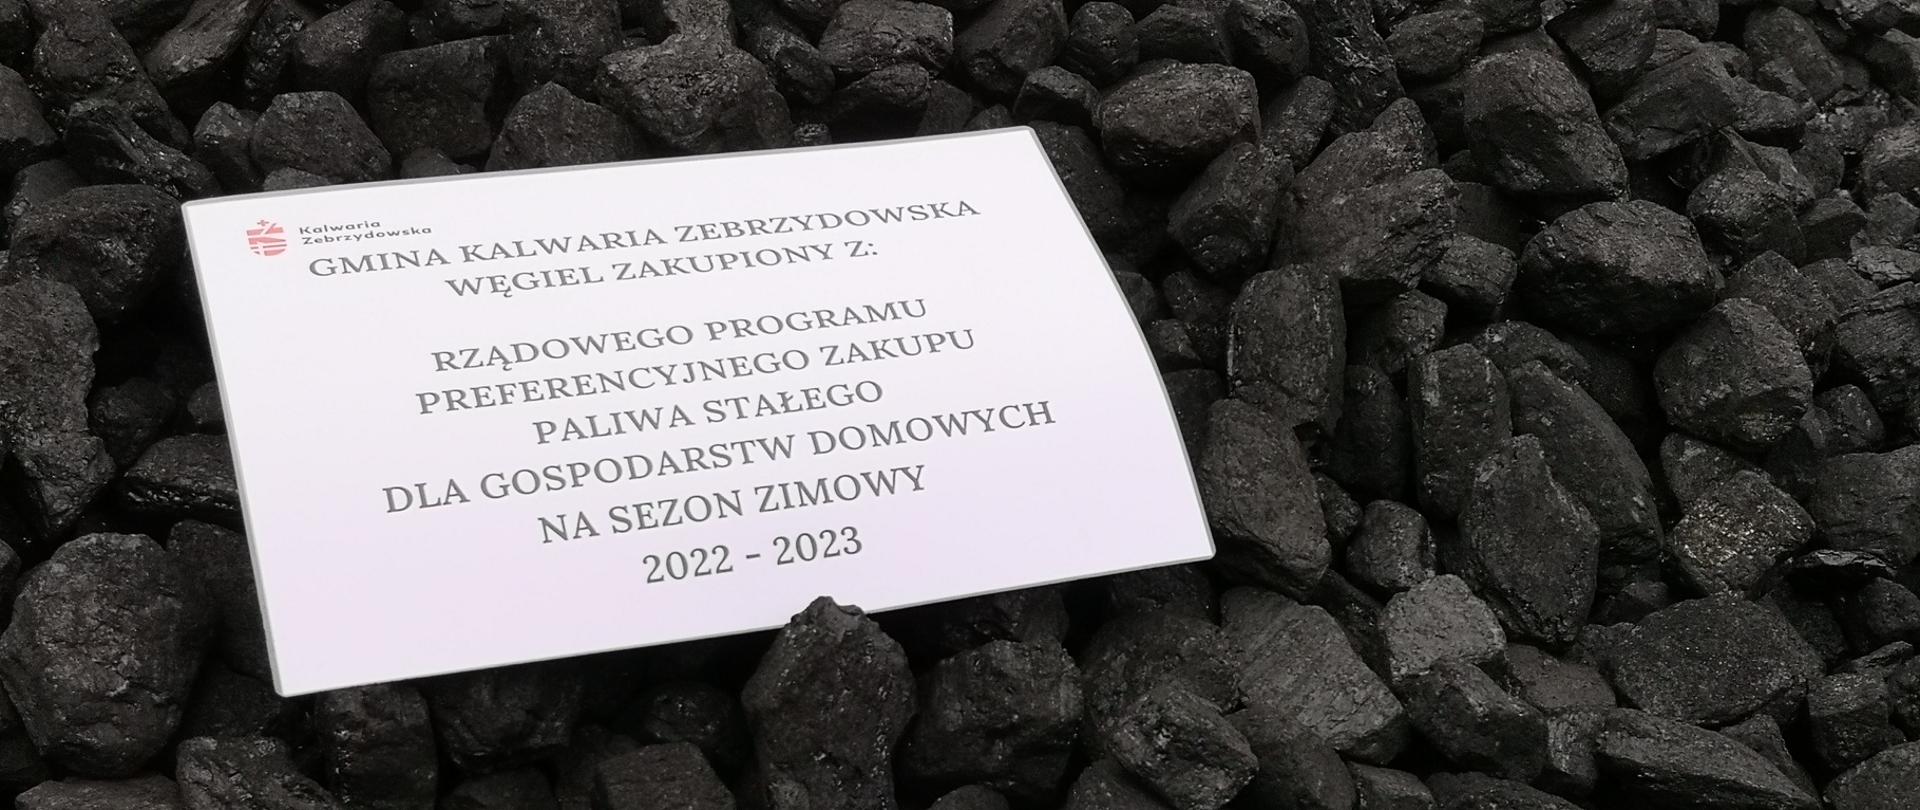 Na węglu kartka z informacją, że węgiel został zakupiony z programu rządowego